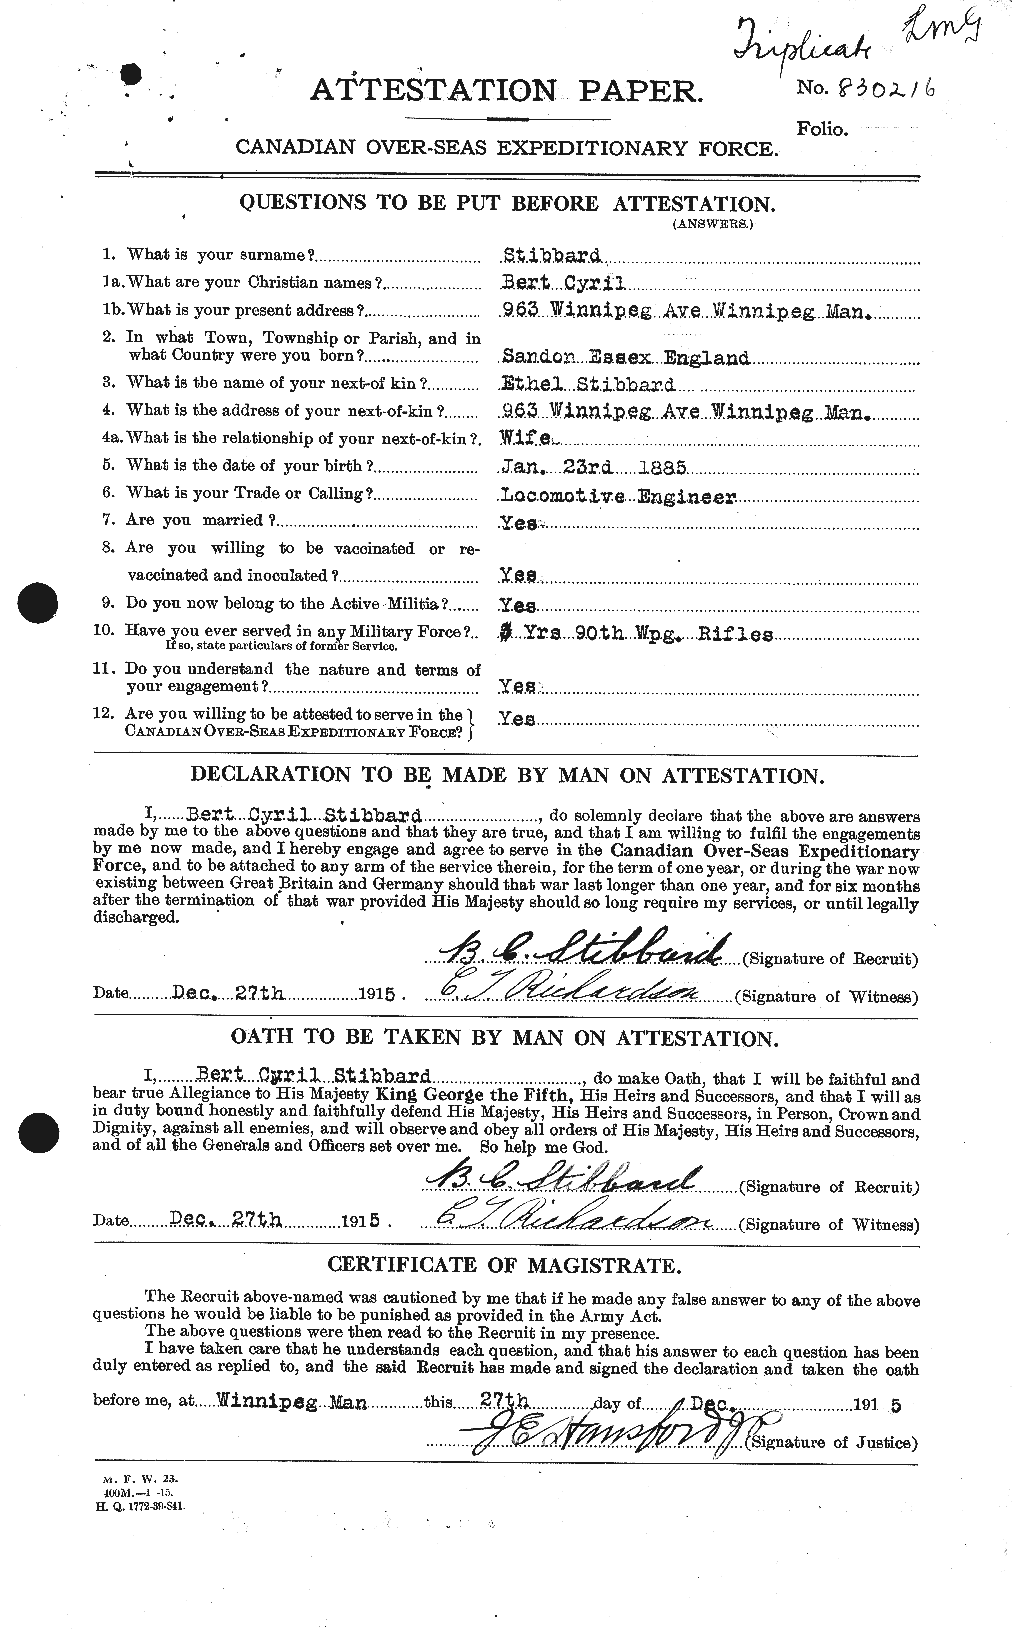 Dossiers du Personnel de la Première Guerre mondiale - CEC 624983a